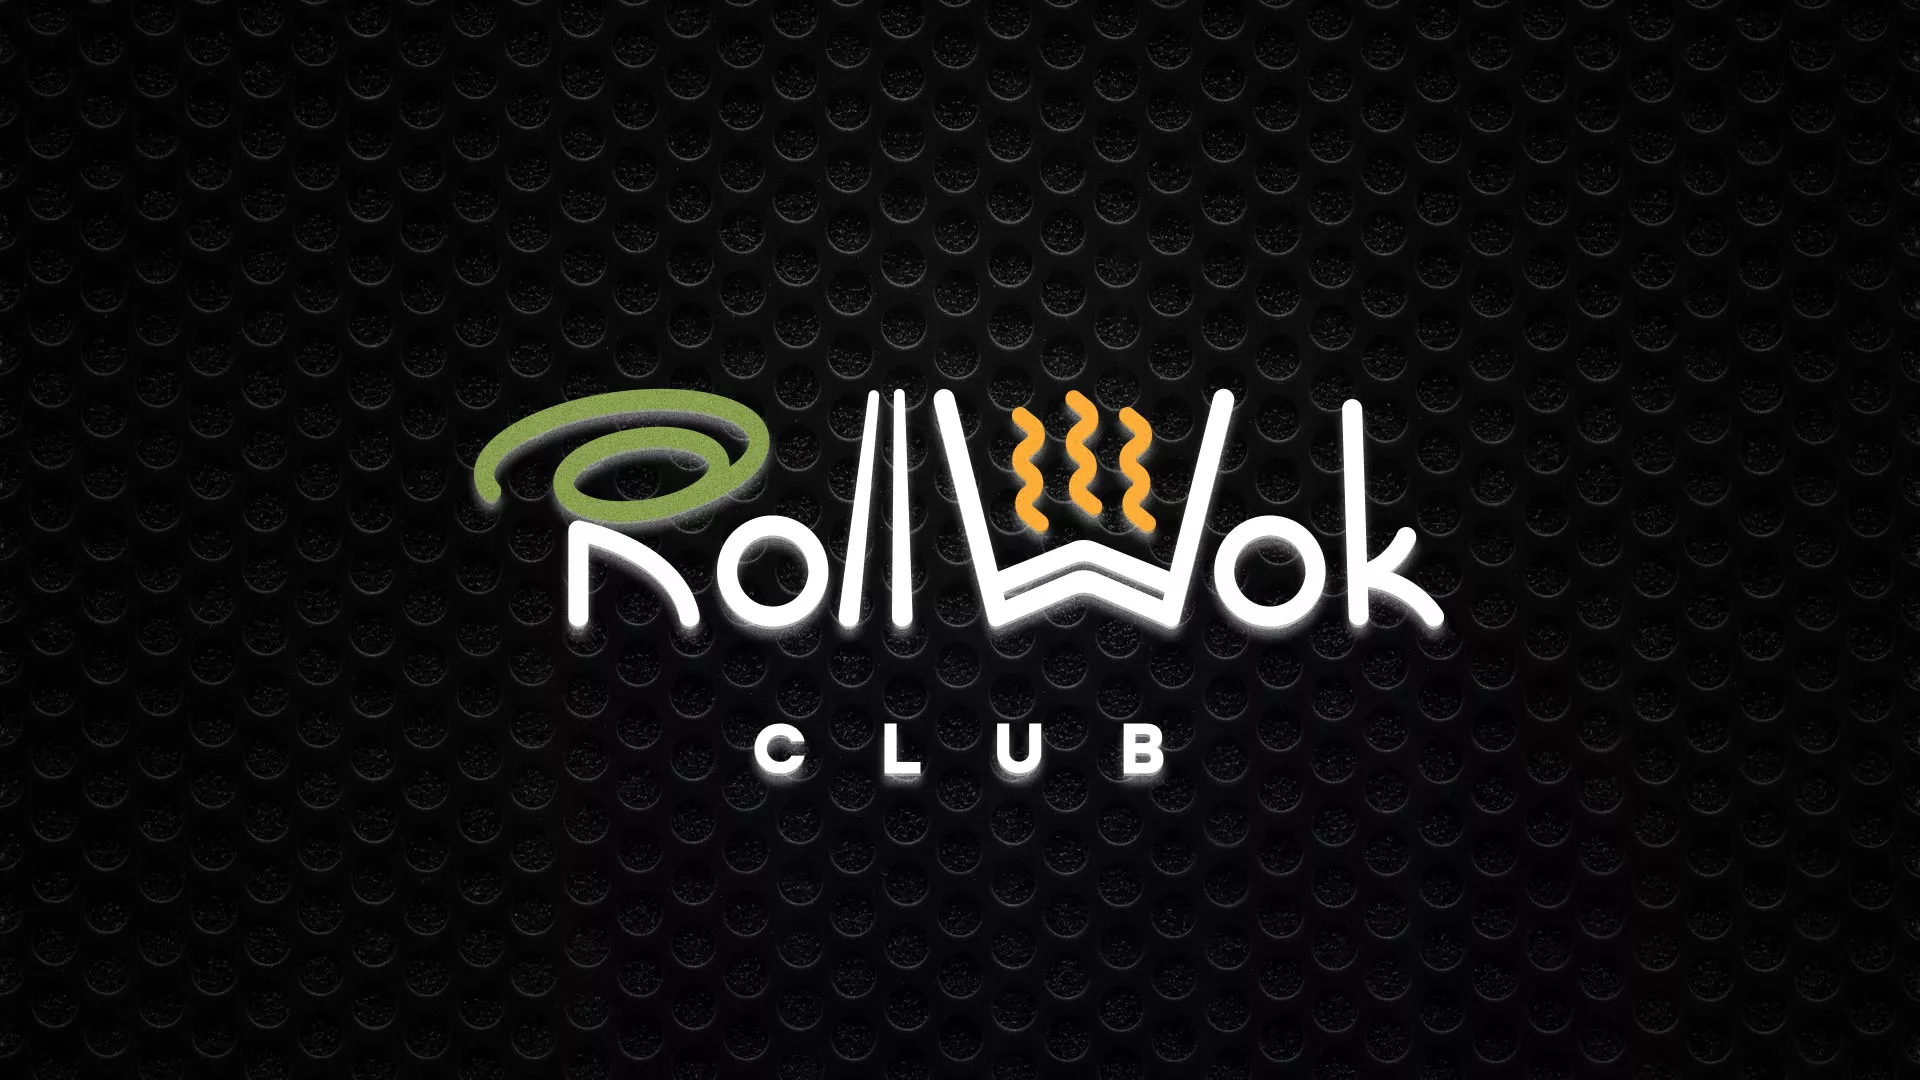 Брендирование торговых точек суши-бара «Roll Wok Club» в Смоленске